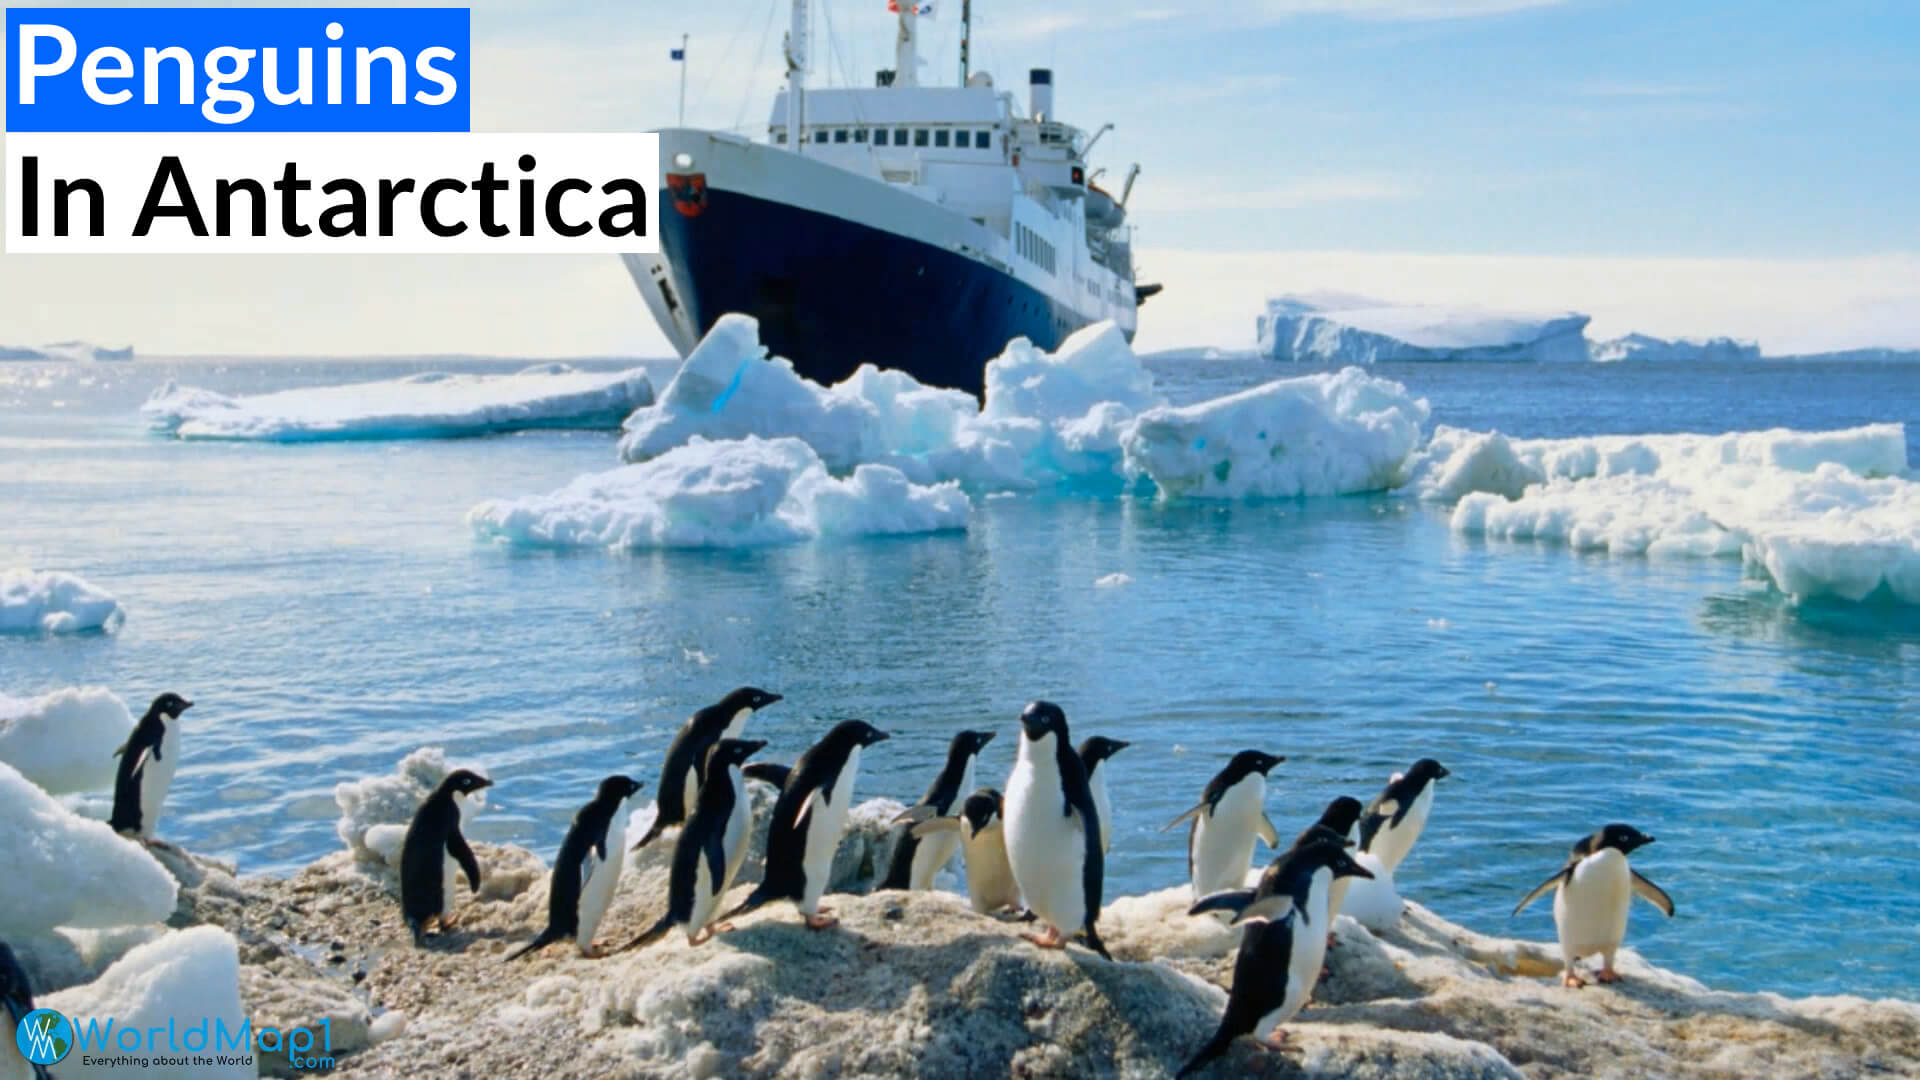 Penguins Near Vessel in Antarctica